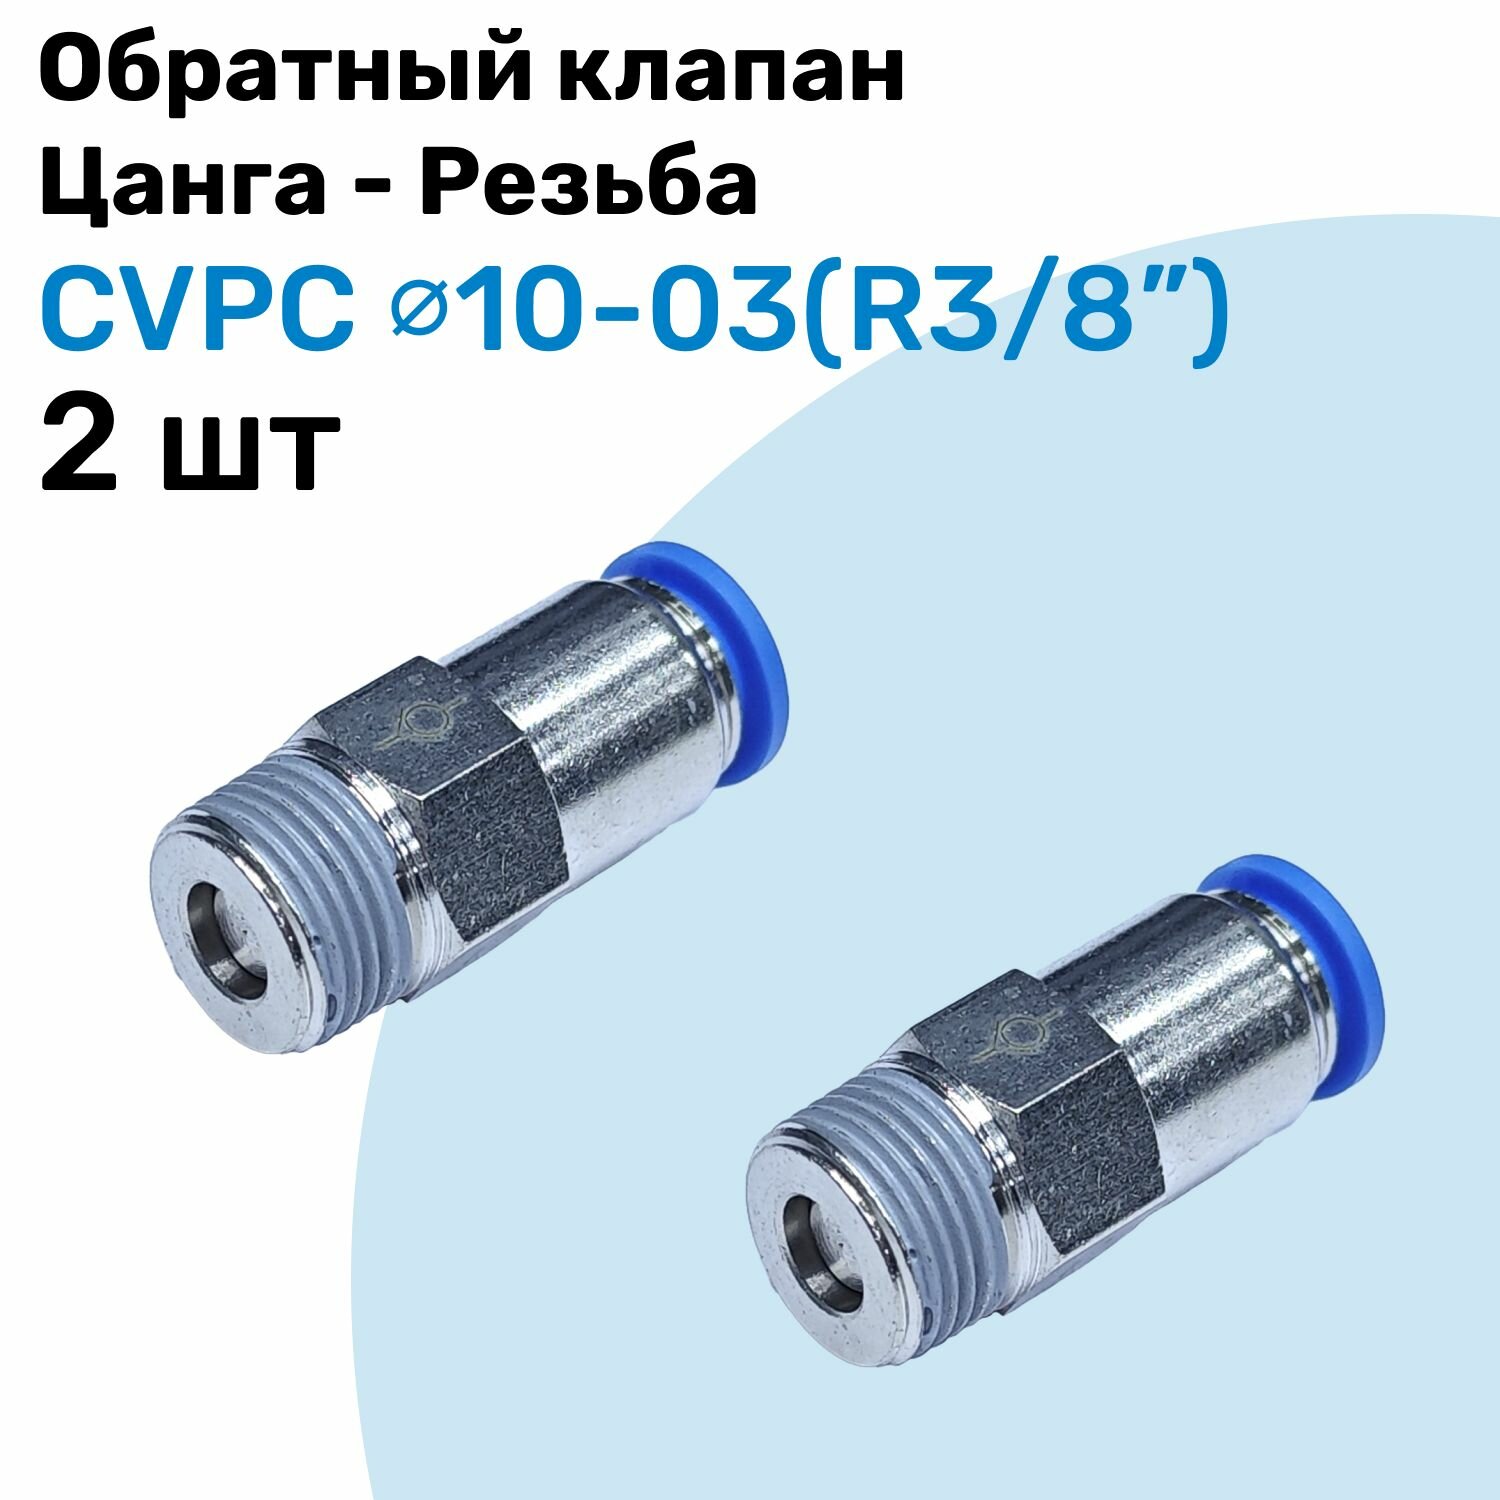 Обратный клапан латунный CVPC 10-03, 10мм - R3/8", Цанга - Внешняя резьба, Пневматический клапан NBPT, Набор 2шт